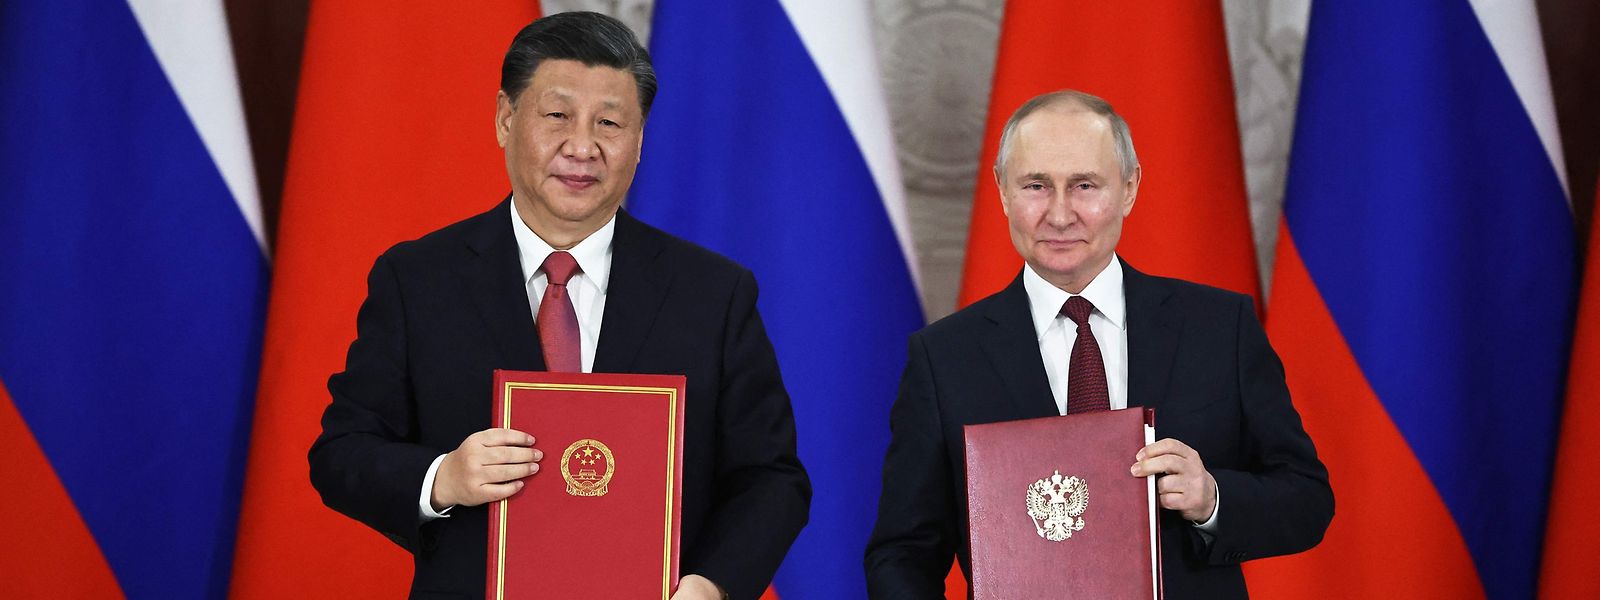 Der russische Präsident Wladimir Putin und der chinesische Präsident Xi Jinping nehmen bei der Unterzeichnungszeremonie nach den Gesprächen.